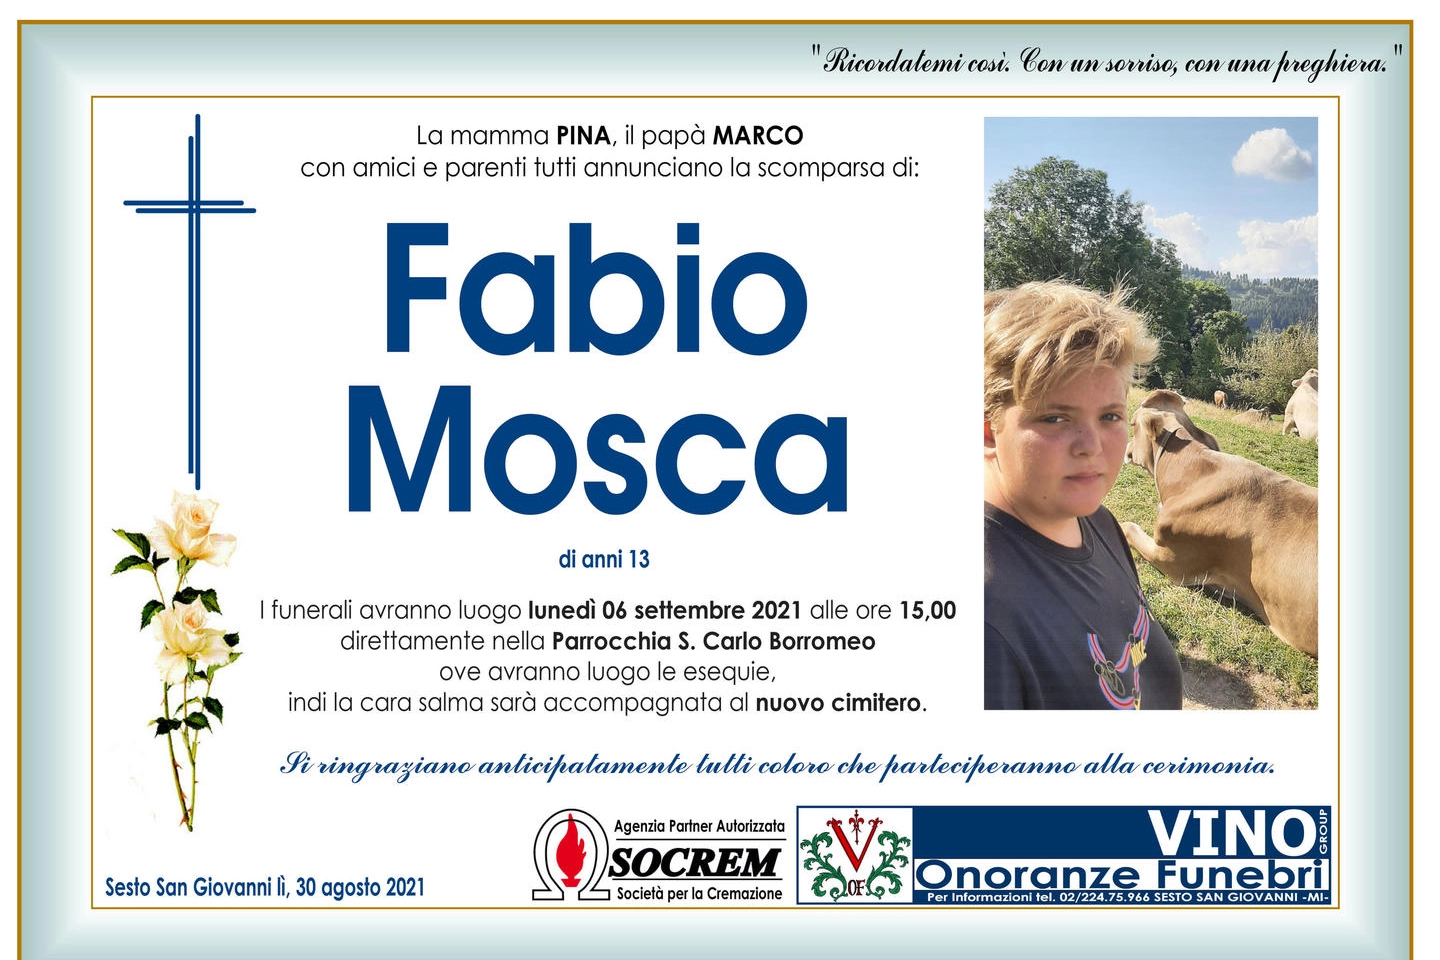 Il manifesto funebre di Fabio Mosca, il 13enne deceduto per una caduta dal monopattino 